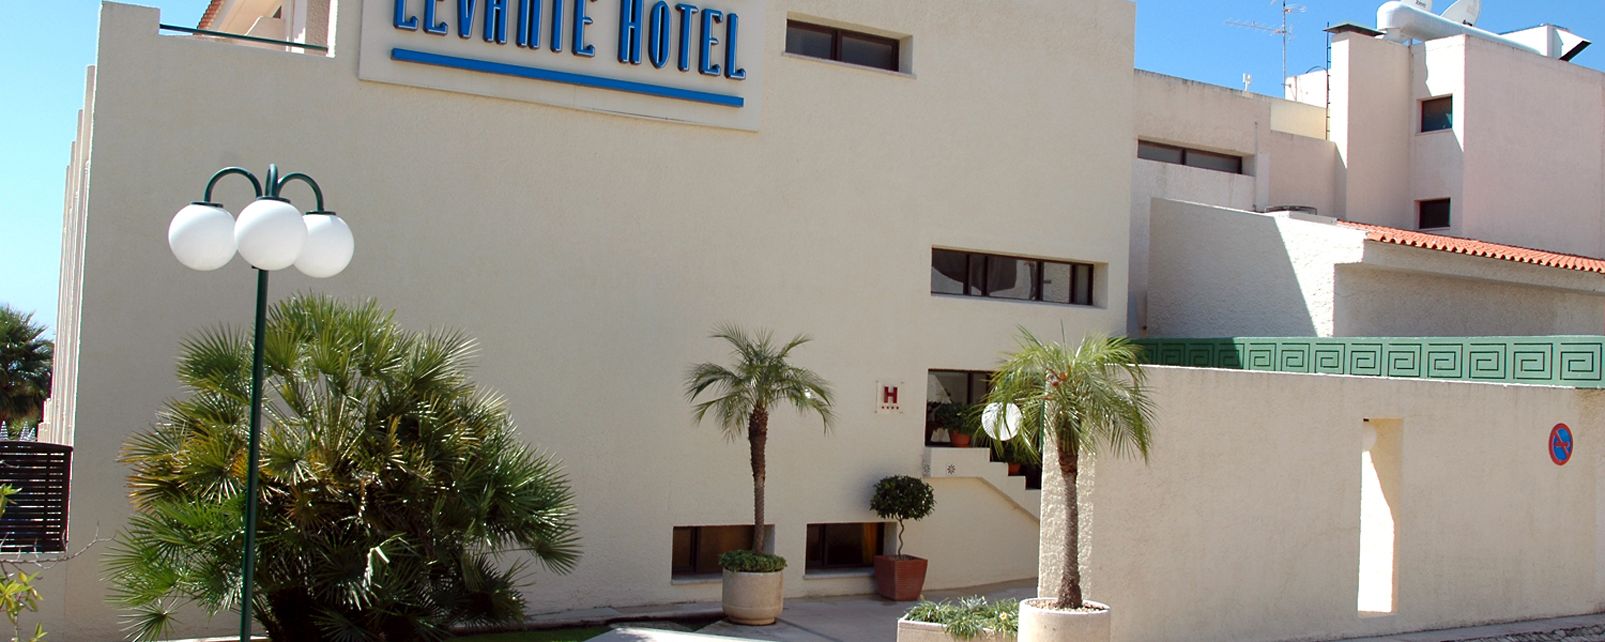 Hotel Pestana Levante